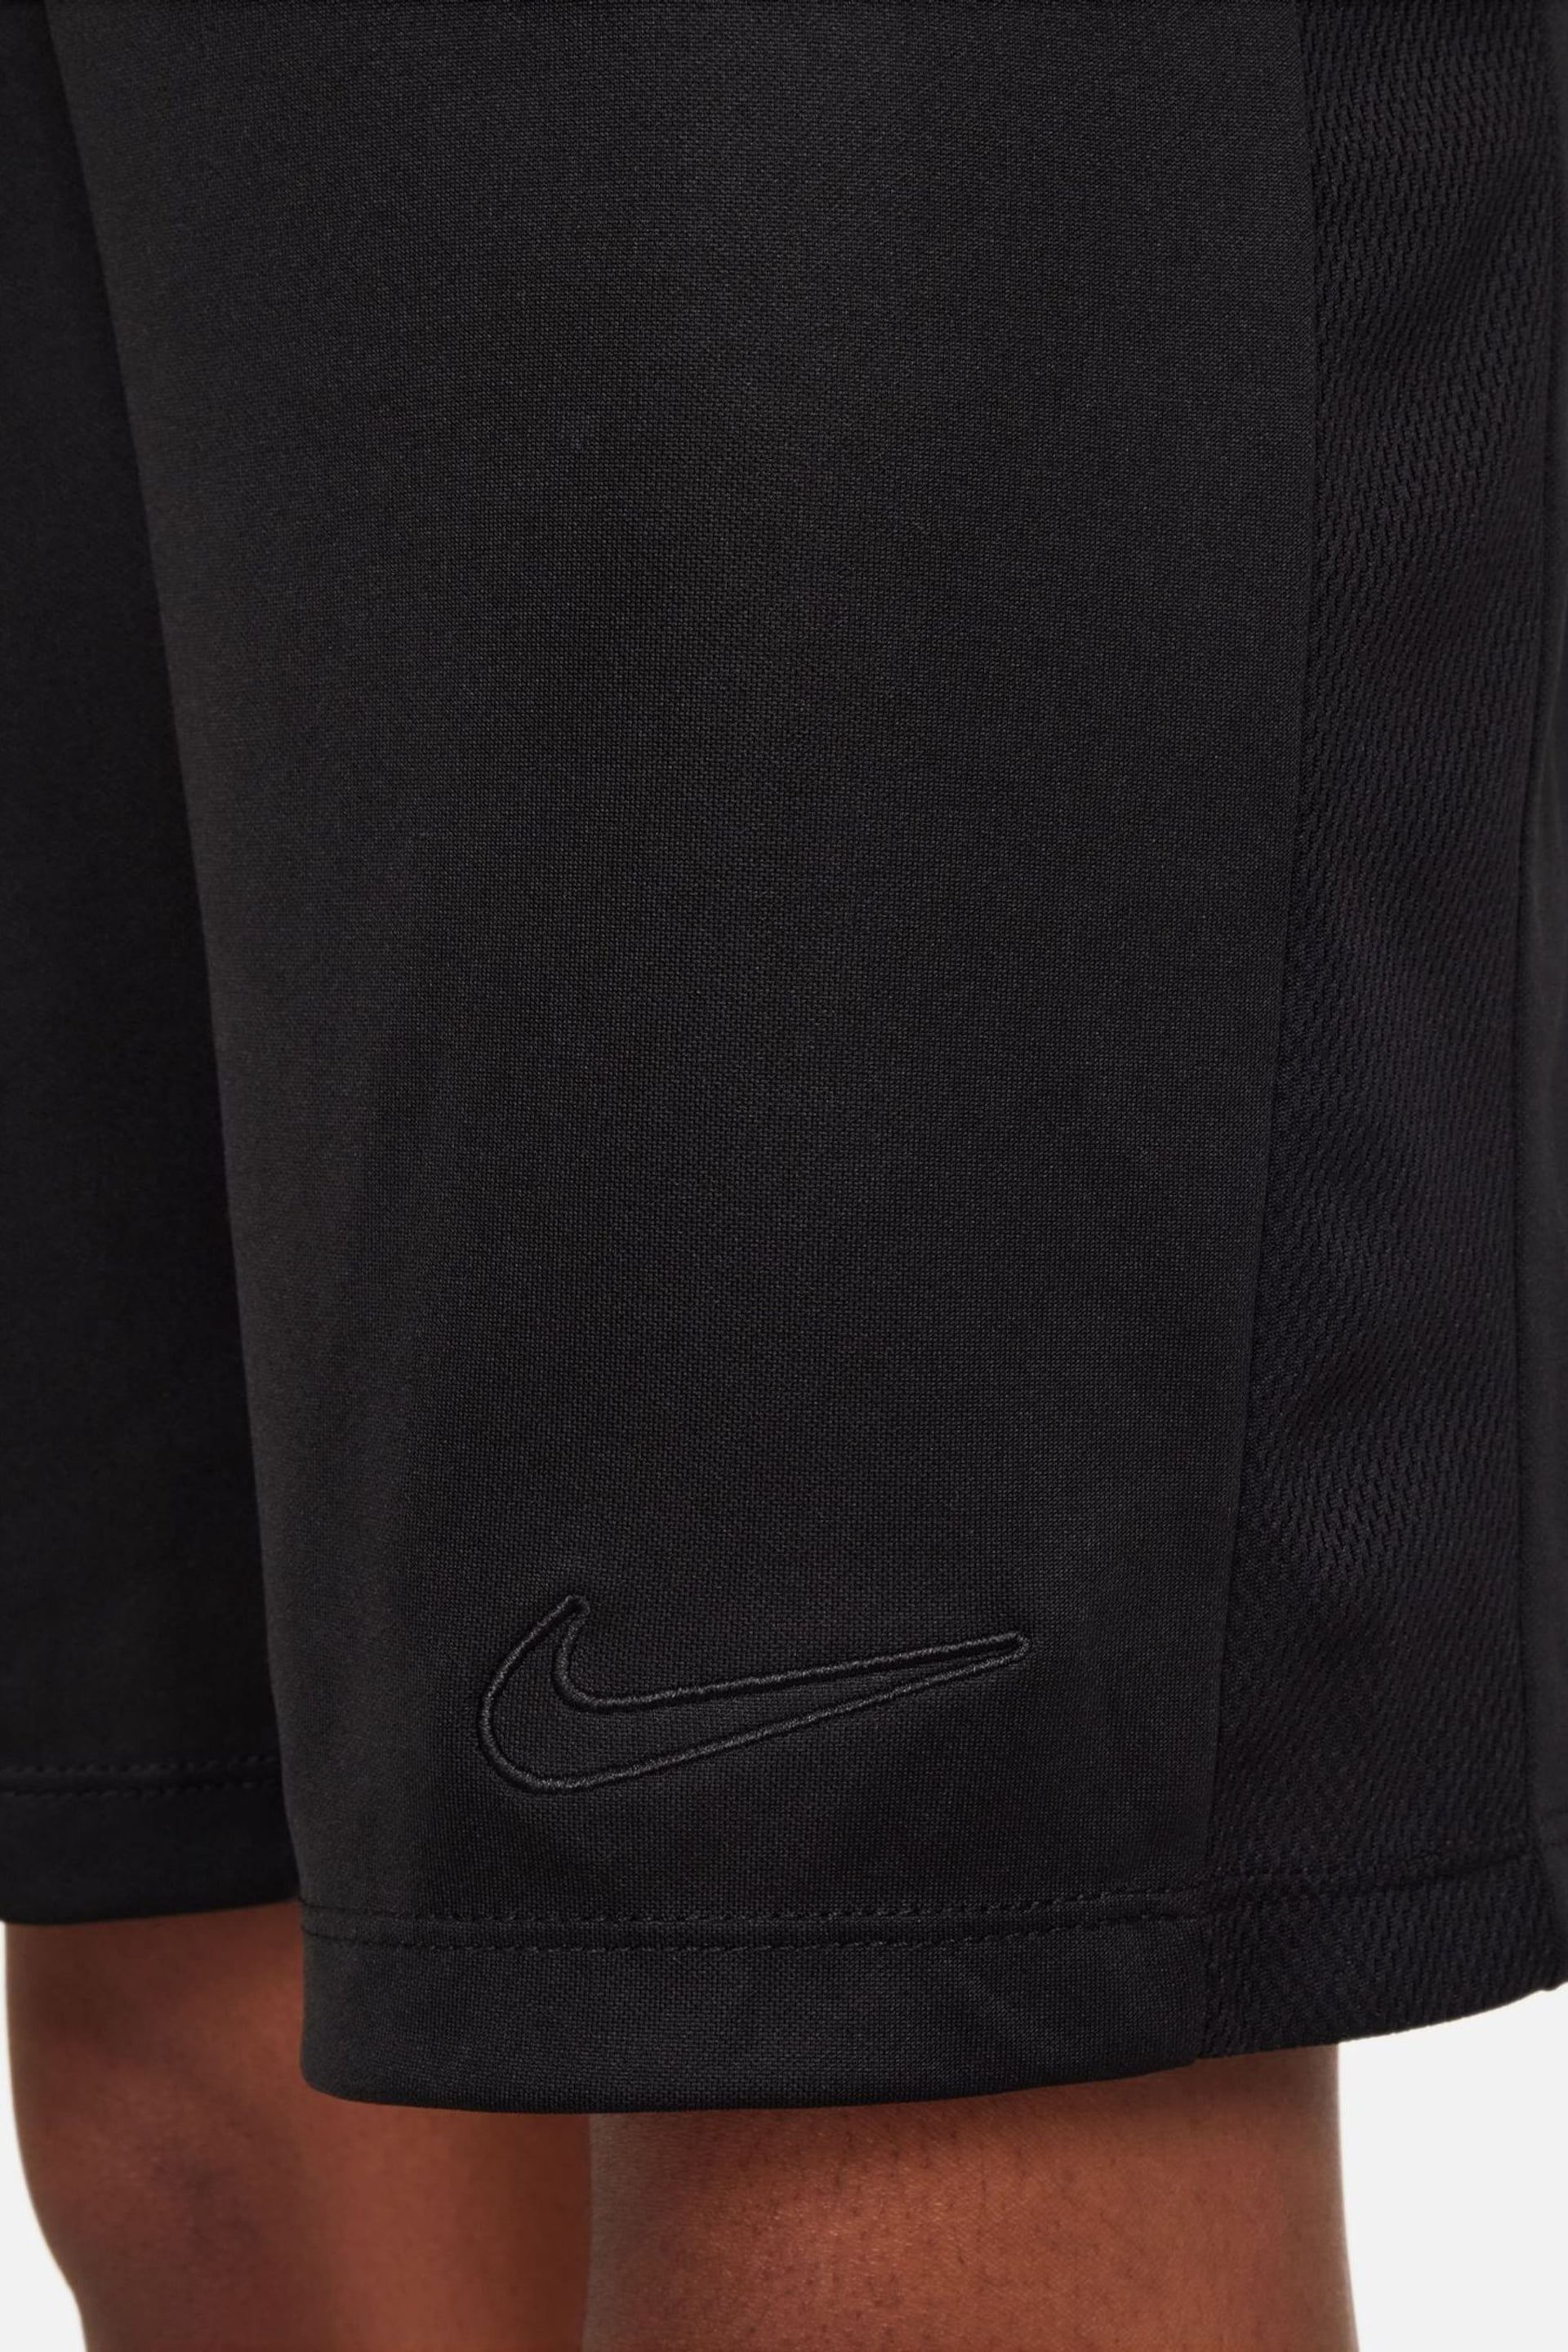 Nike Black Dri-FIT Academy Training Shorts - Image 7 of 9